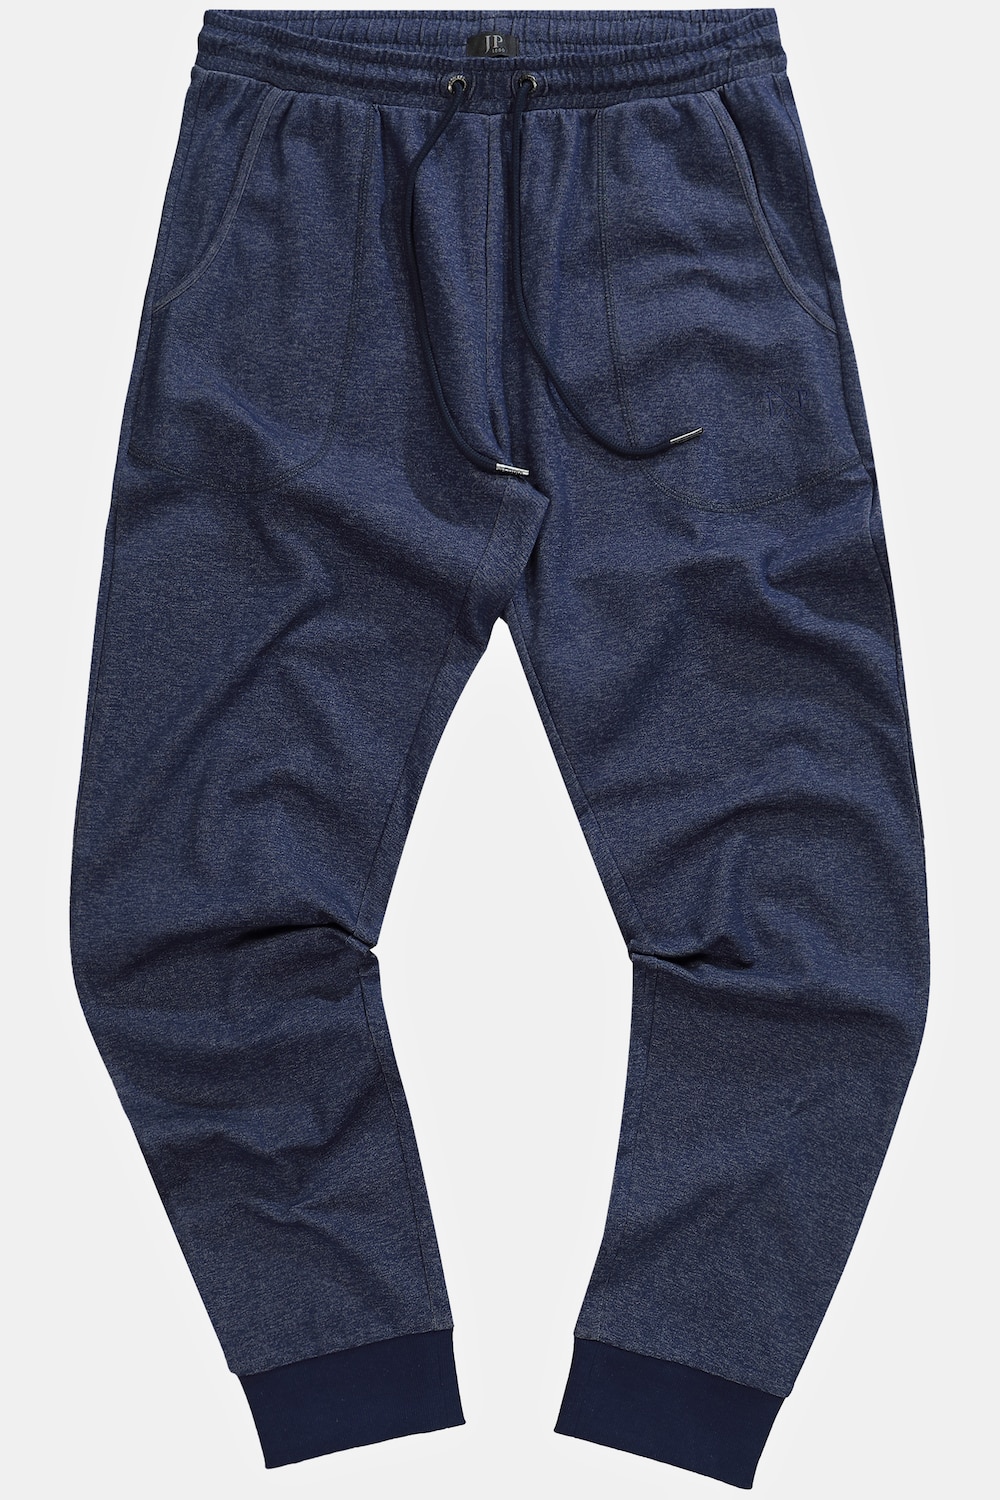 Grote Maten Pyjamabroek, Heren, blauw, Maat: XXL, Katoen, JP1880